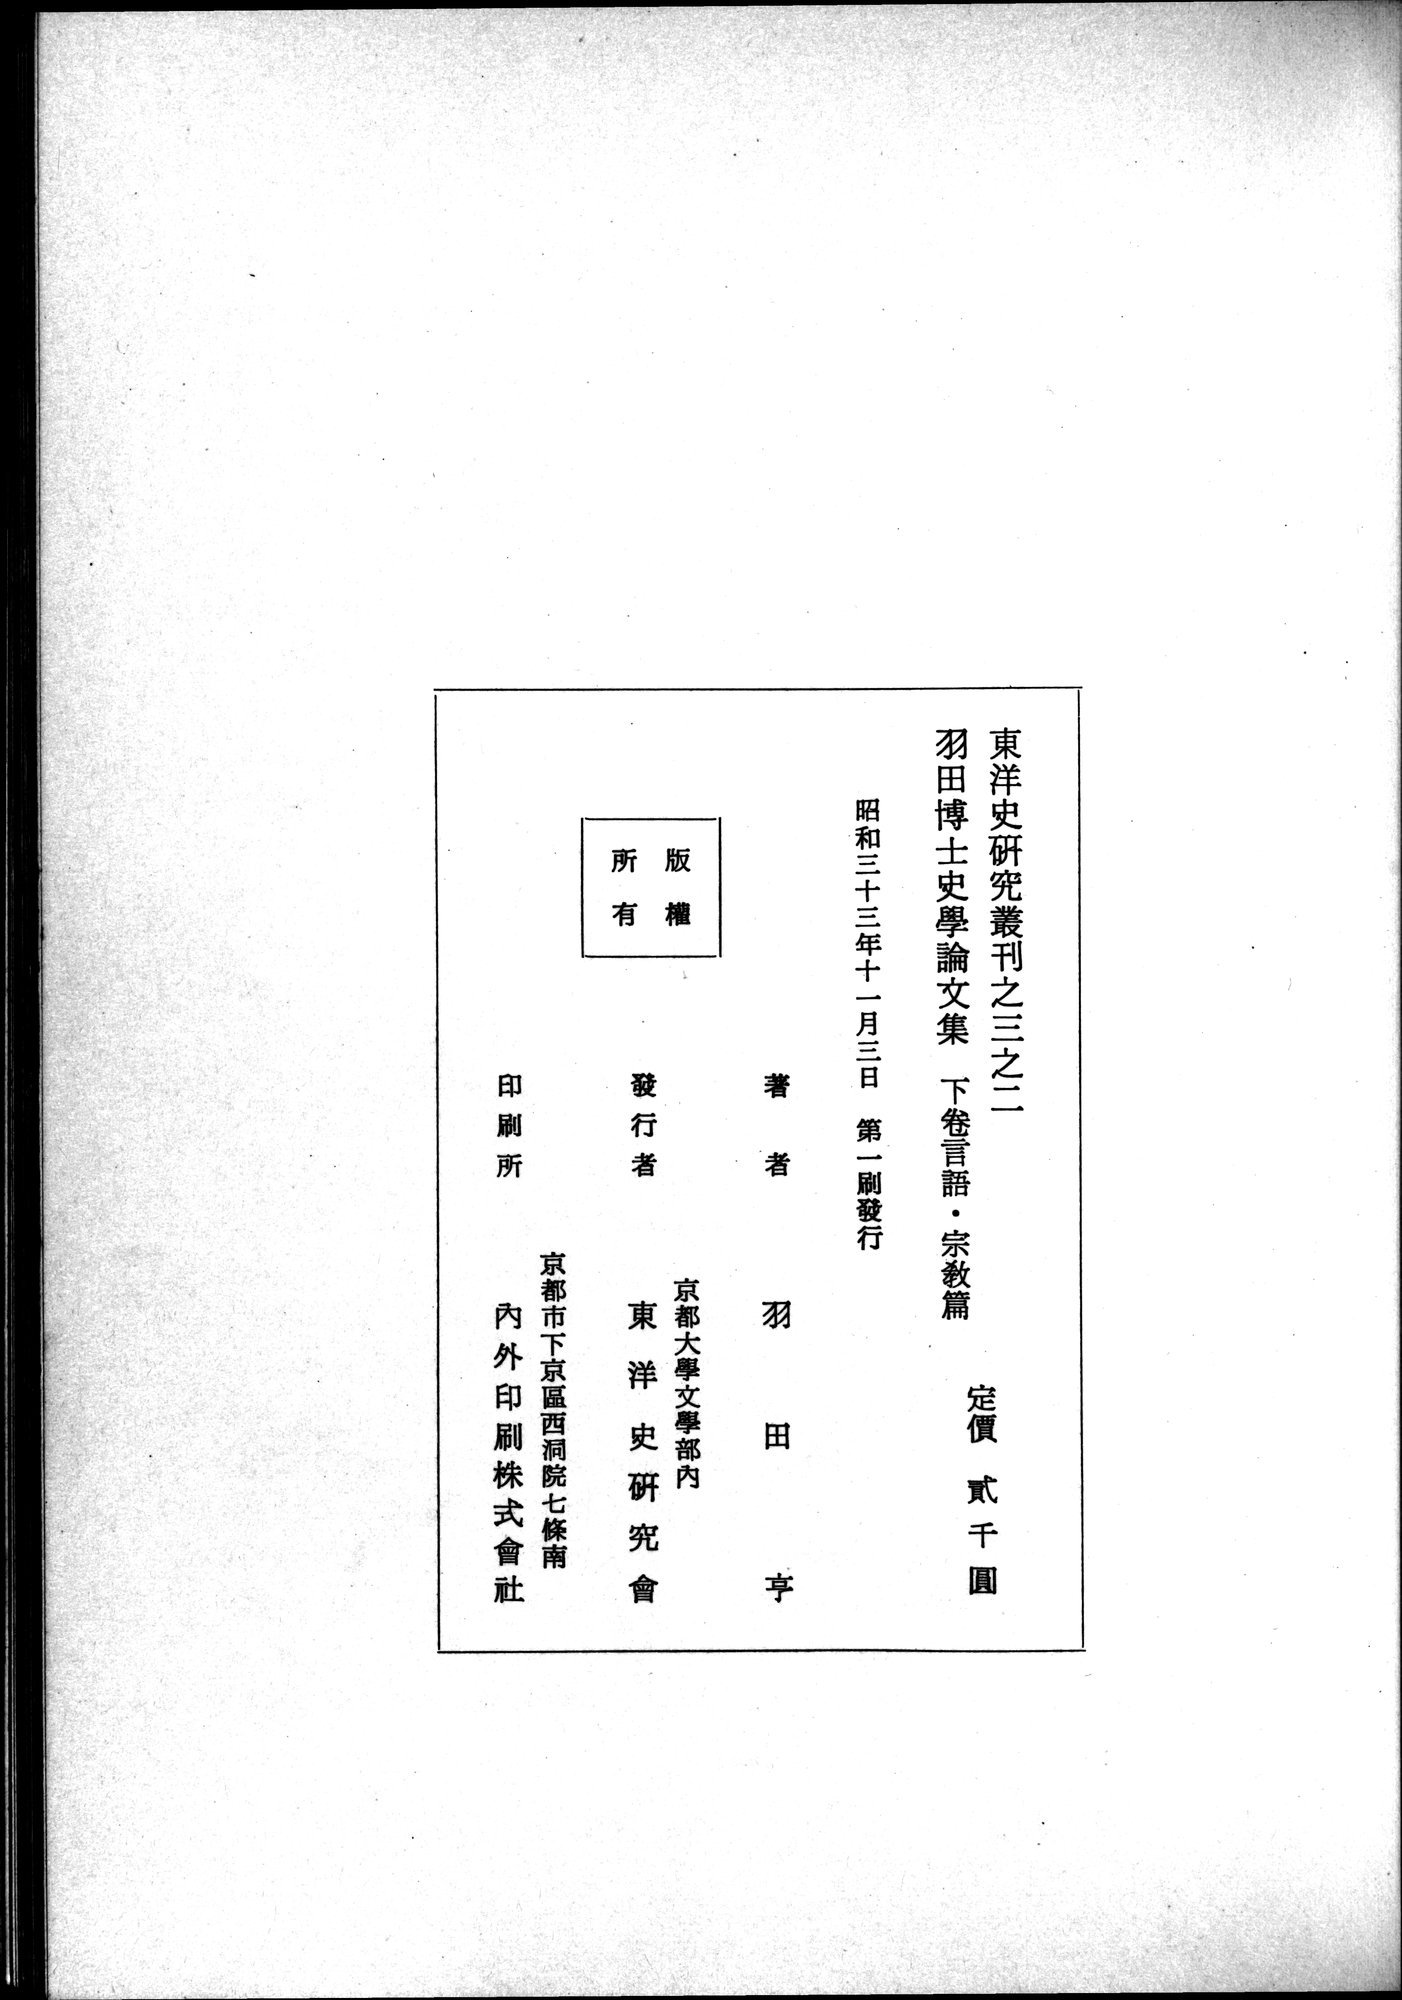 羽田博士史学論文集 : vol.2 / Page 809 (Grayscale High Resolution Image)